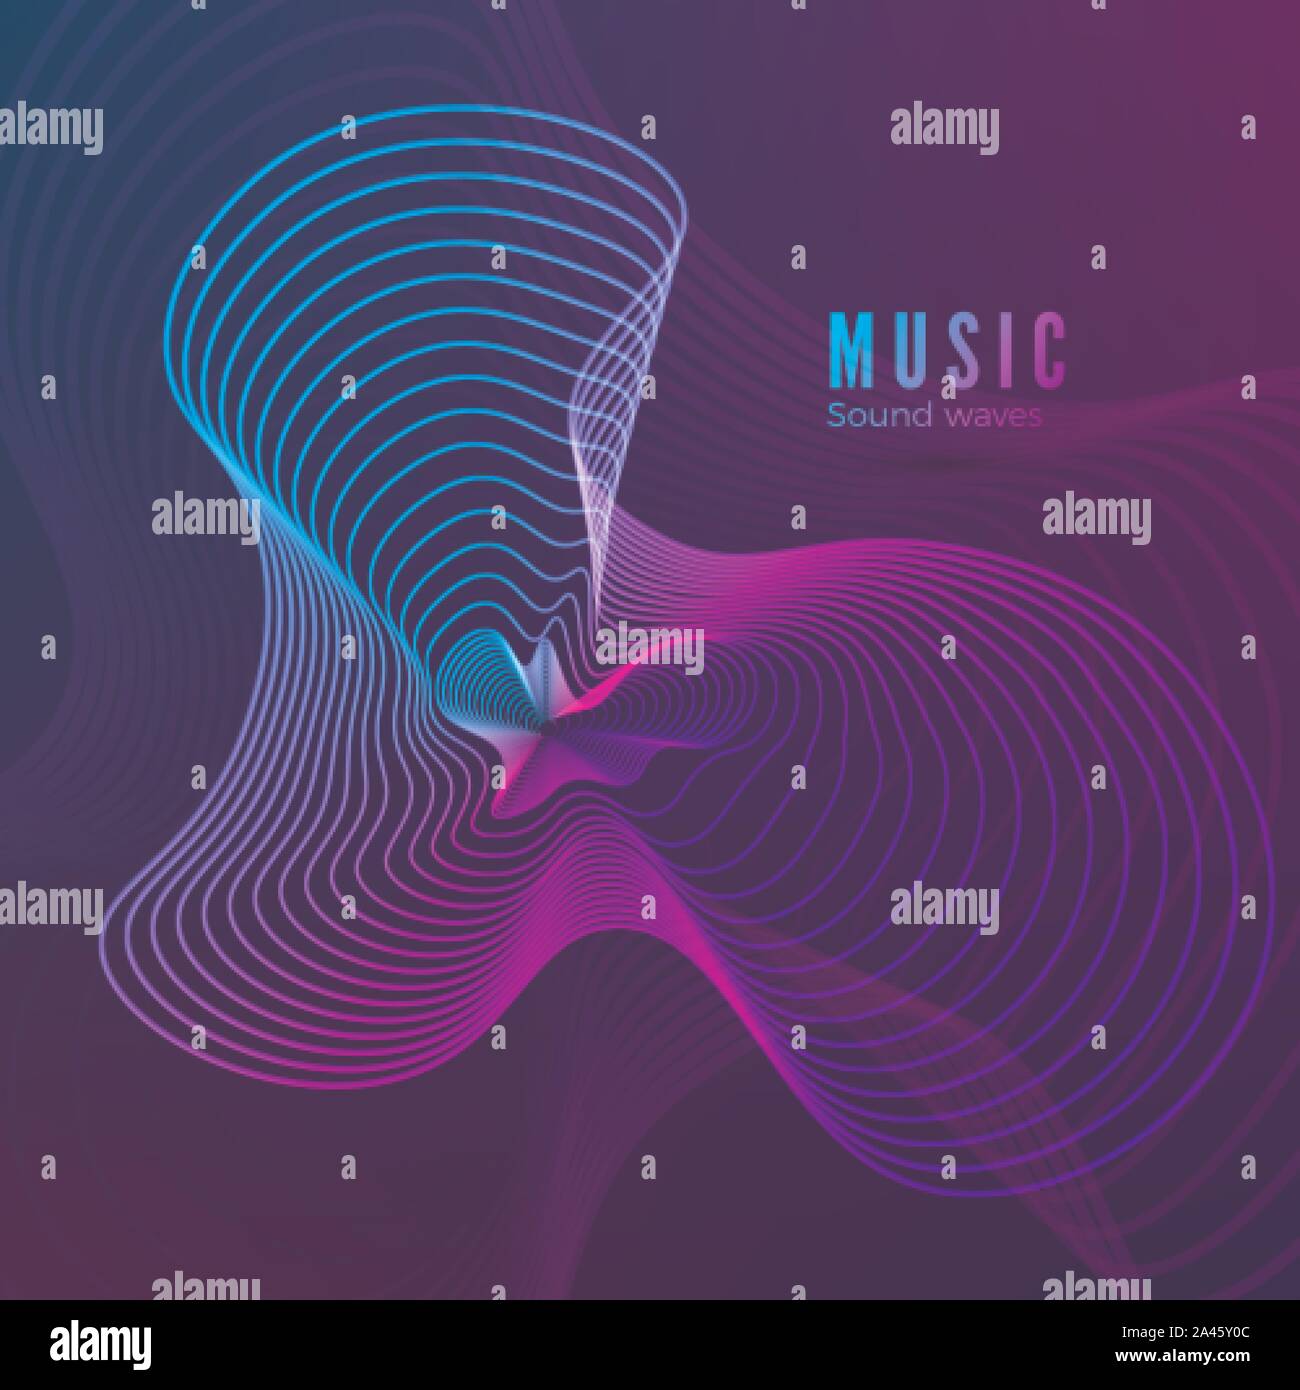 Musik klang Vorlage. Blau und lila Farben Abbildung für Ihr Album Cover Design. Abstrakte radial digitale Signal bilden. Vektor Stock Vektor